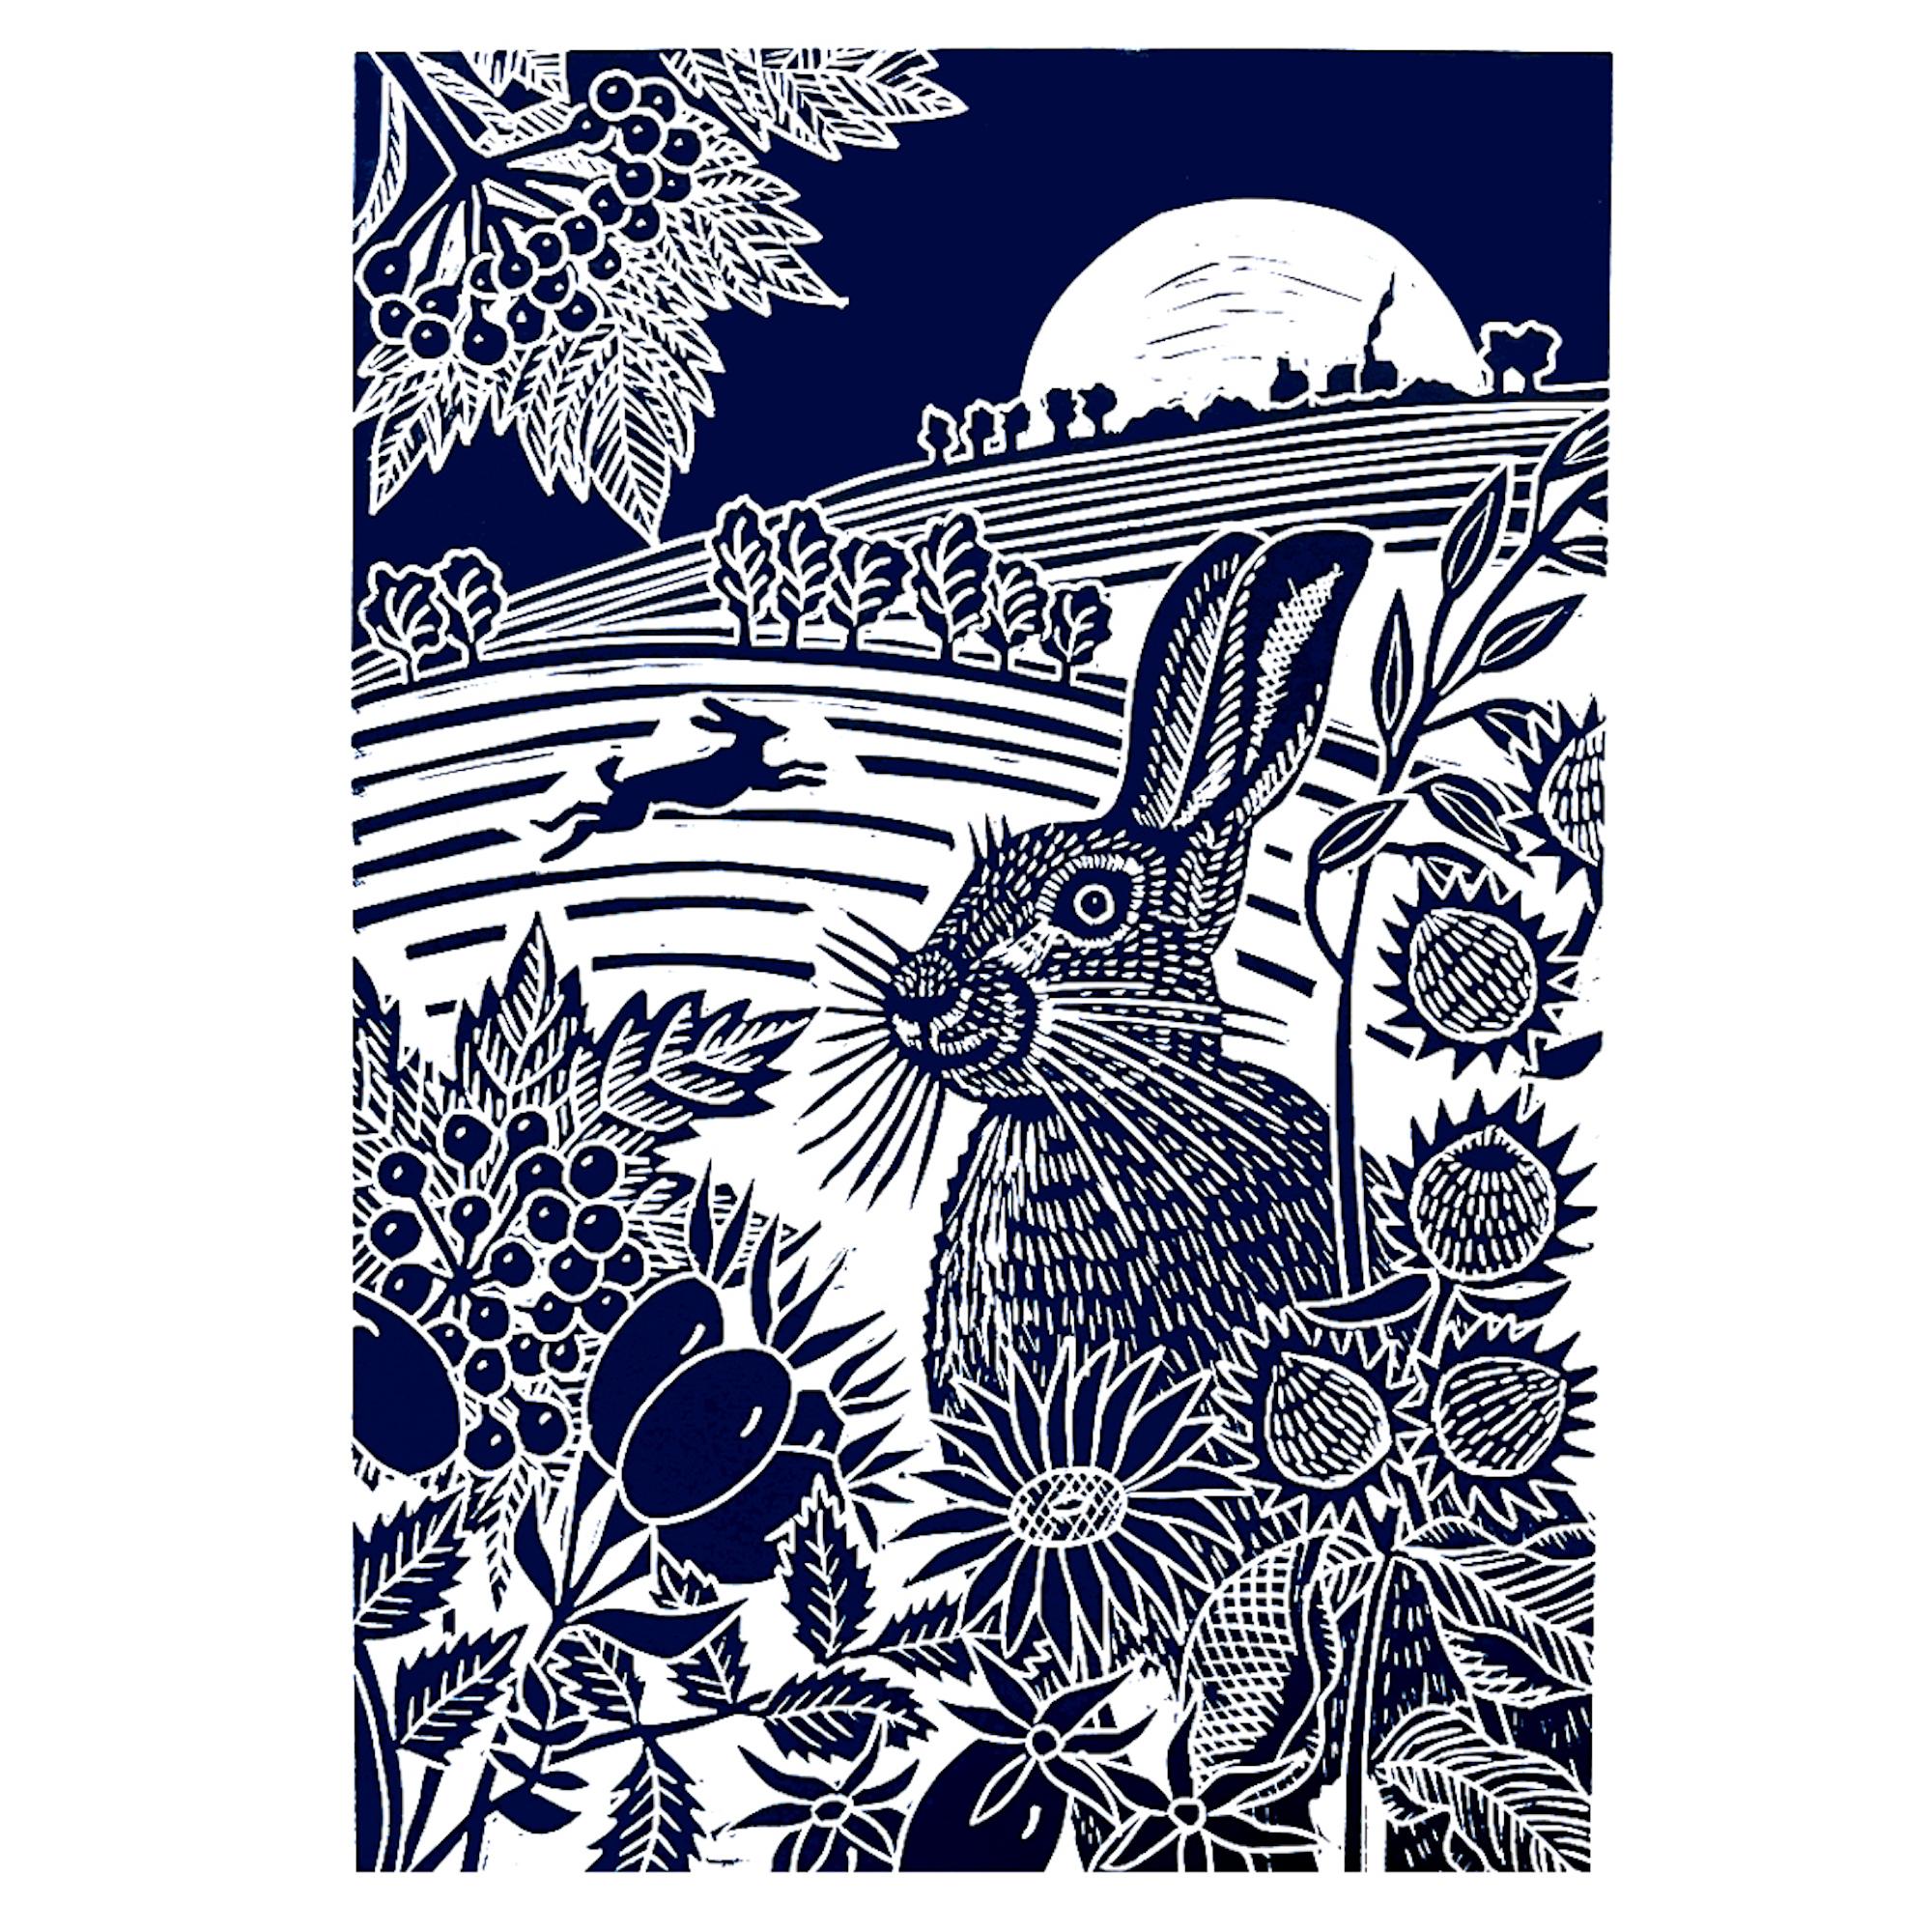 Harvest Moon Hares, Animal Art, Minimalist Artwork, Linocut Print, Hare Art